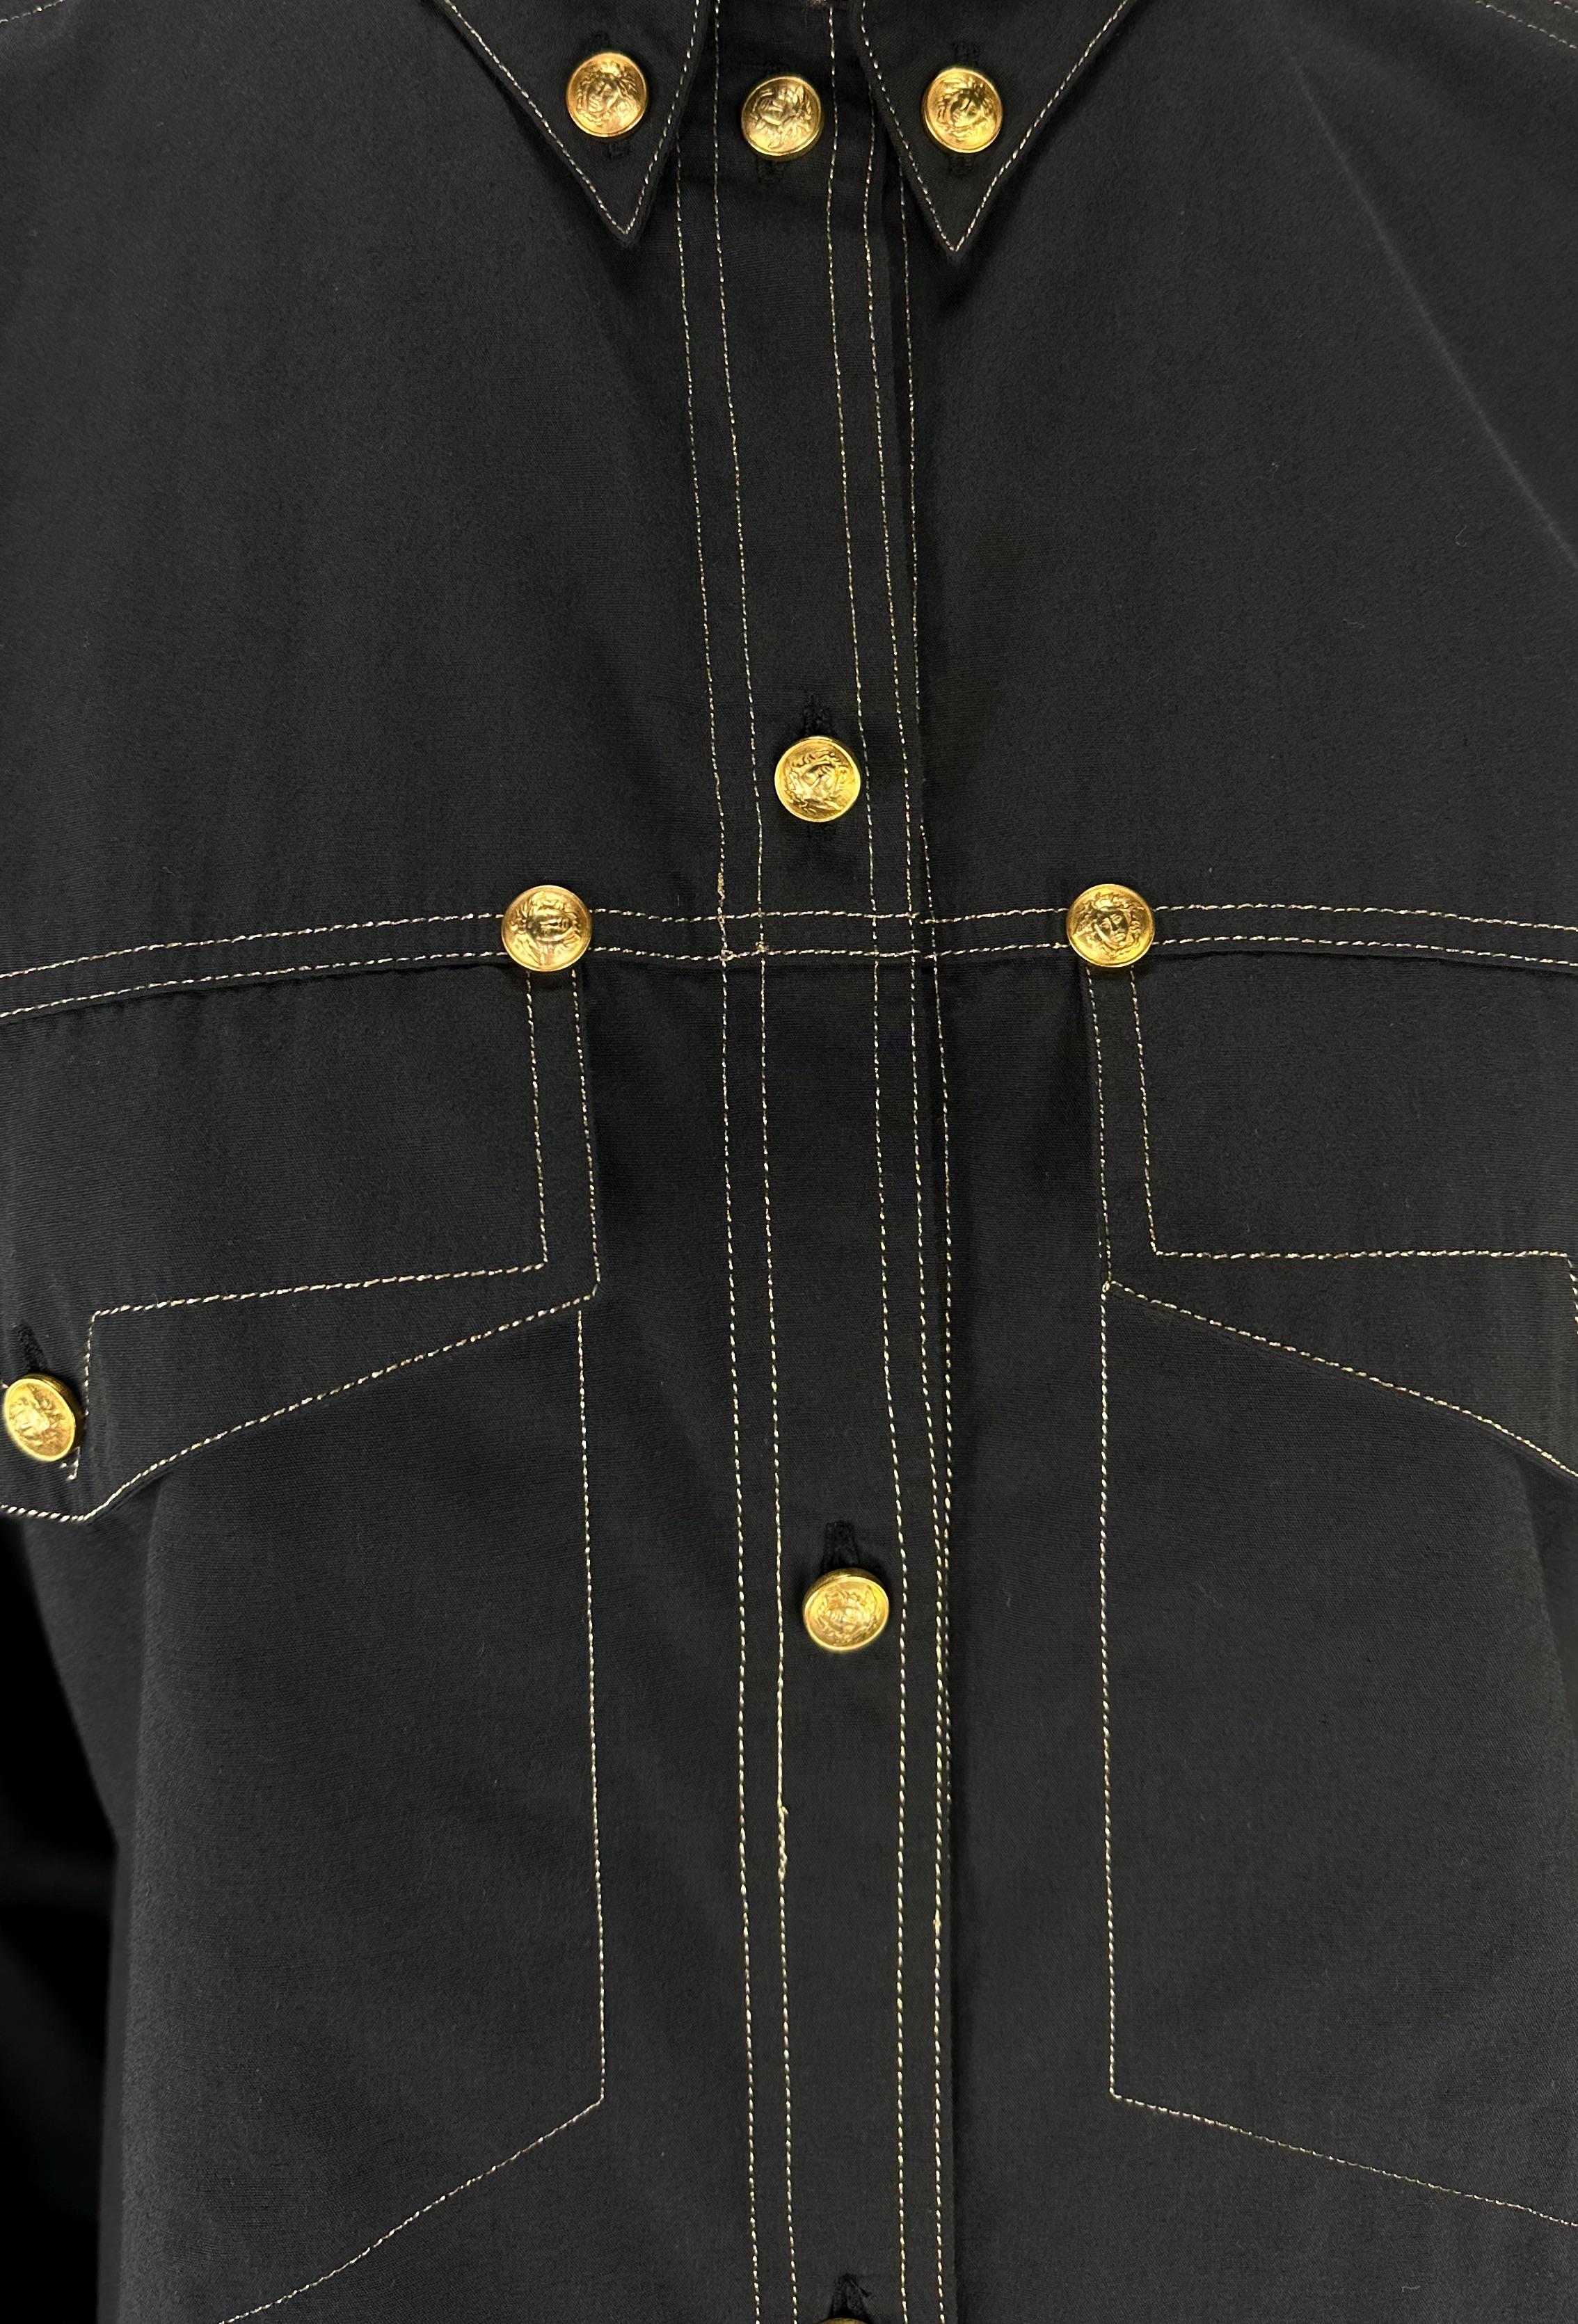 Wir präsentieren ein fabelhaftes schwarzes Hemd mit Knopfleiste von Gianni Versace, entworfen von Gianni Versace. Dieses vom Western inspirierte Hemd aus der Herbst/Winter-Kollektion 1992 ist mit goldfarbenen Versace Medusa Reliefknöpfen und Nieten